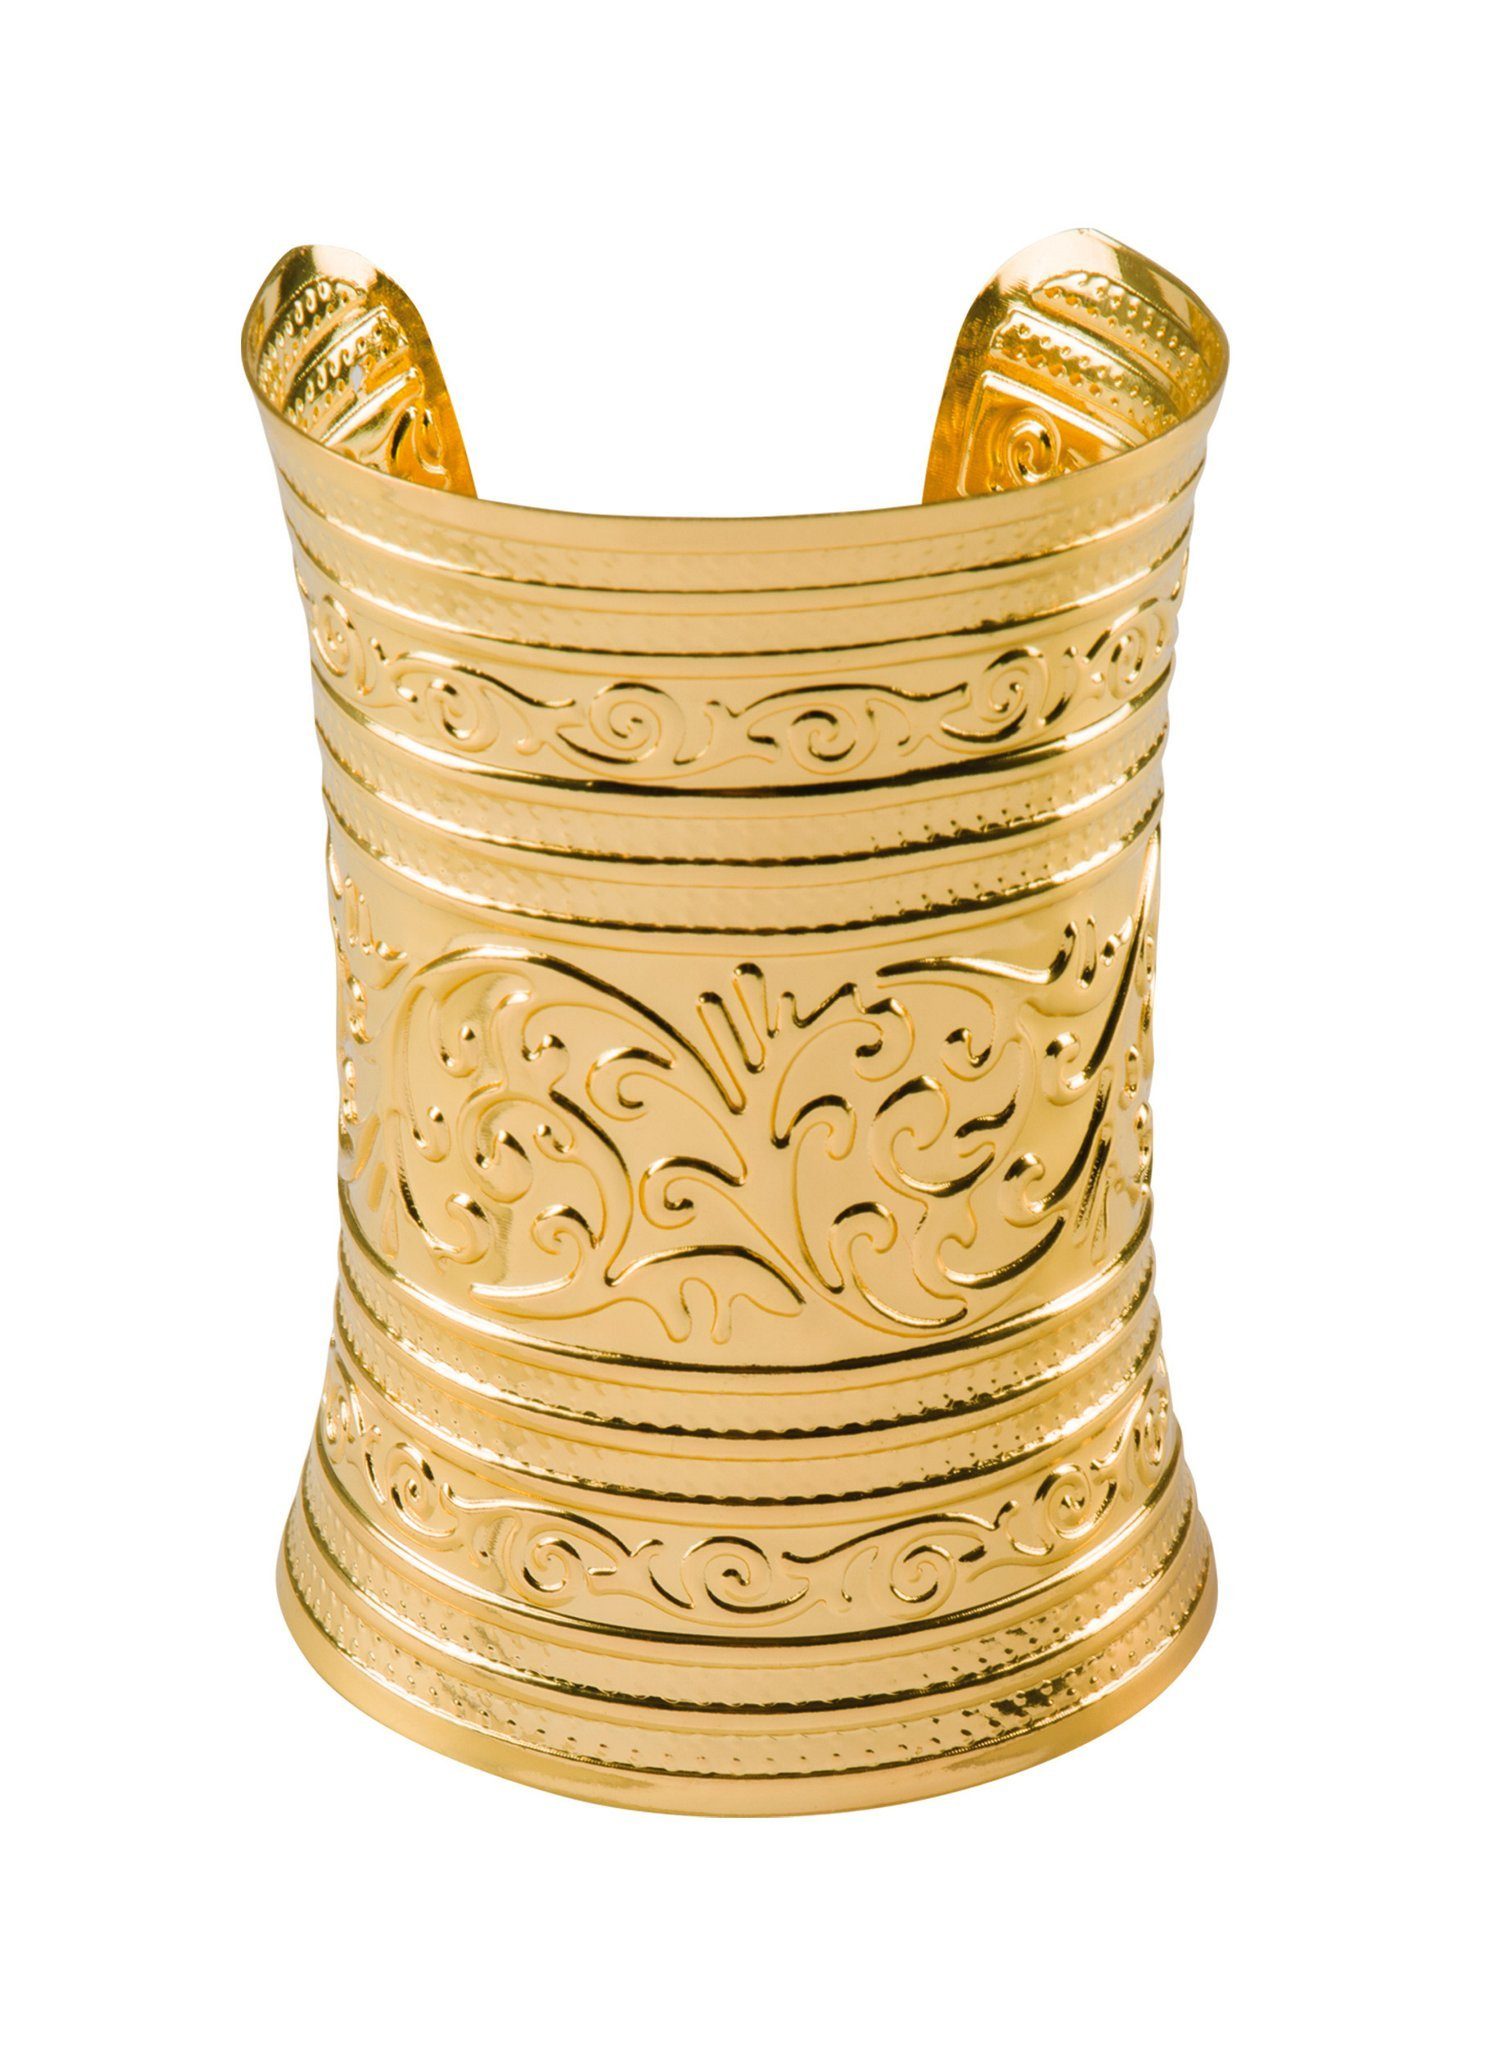 Boland Kostüm Römer Armband Vestalin, Eleganter goldfarbener Armreif für Fantasy und Antike